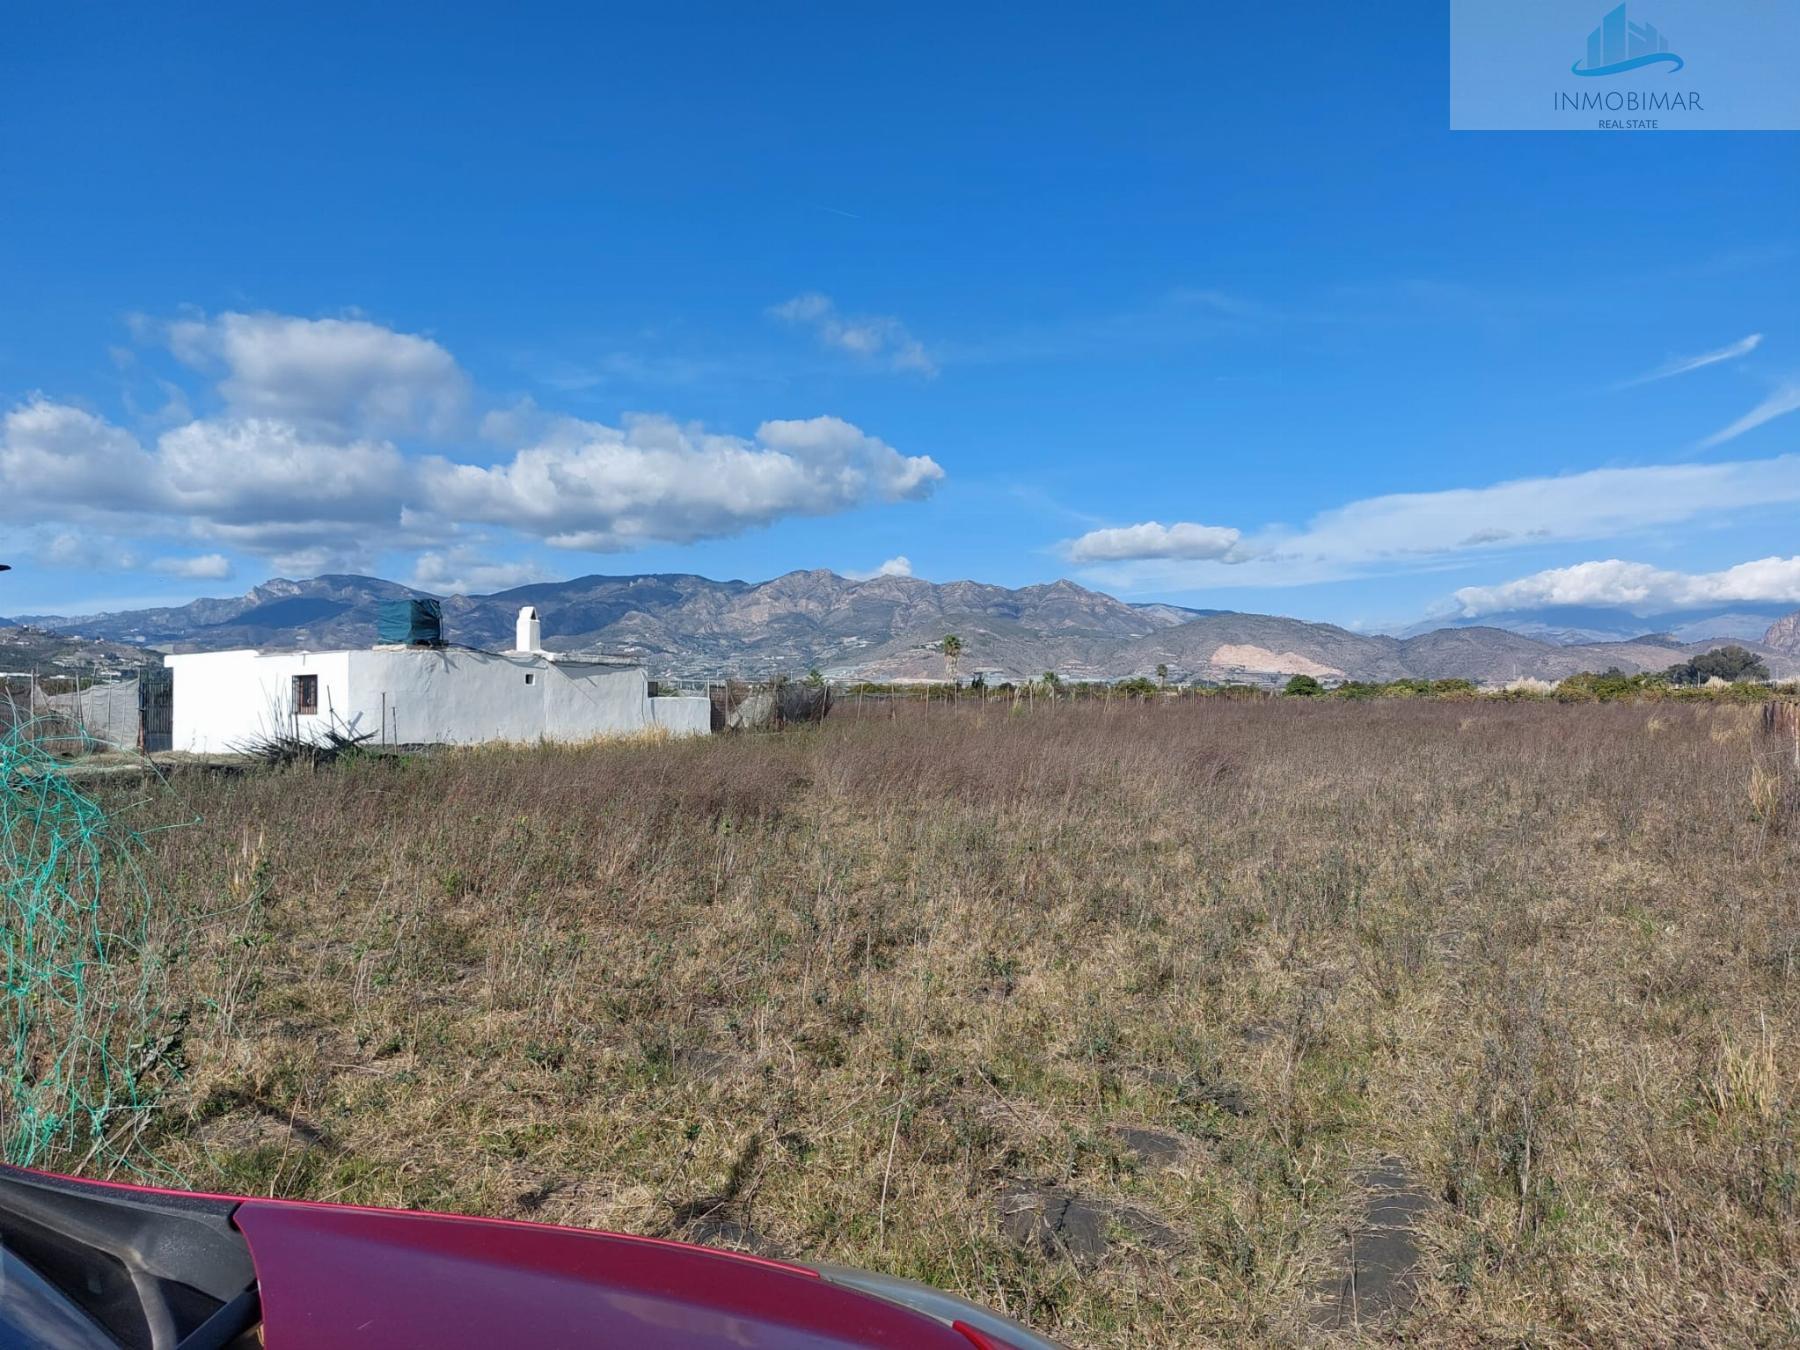 Vente de propriété rurale dans Salobreña